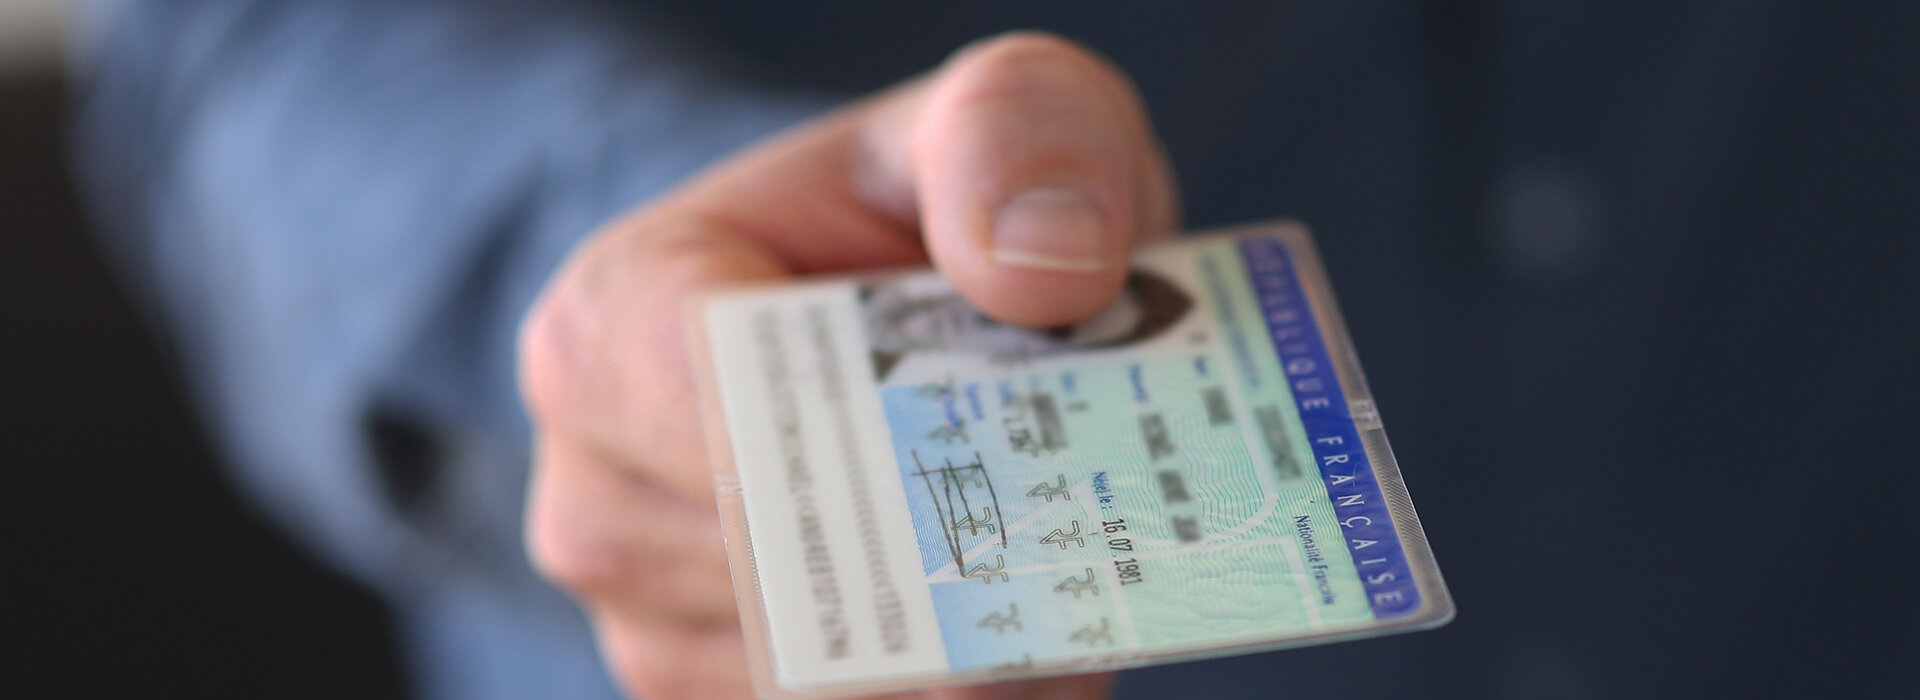 Carte d’identité et passeport